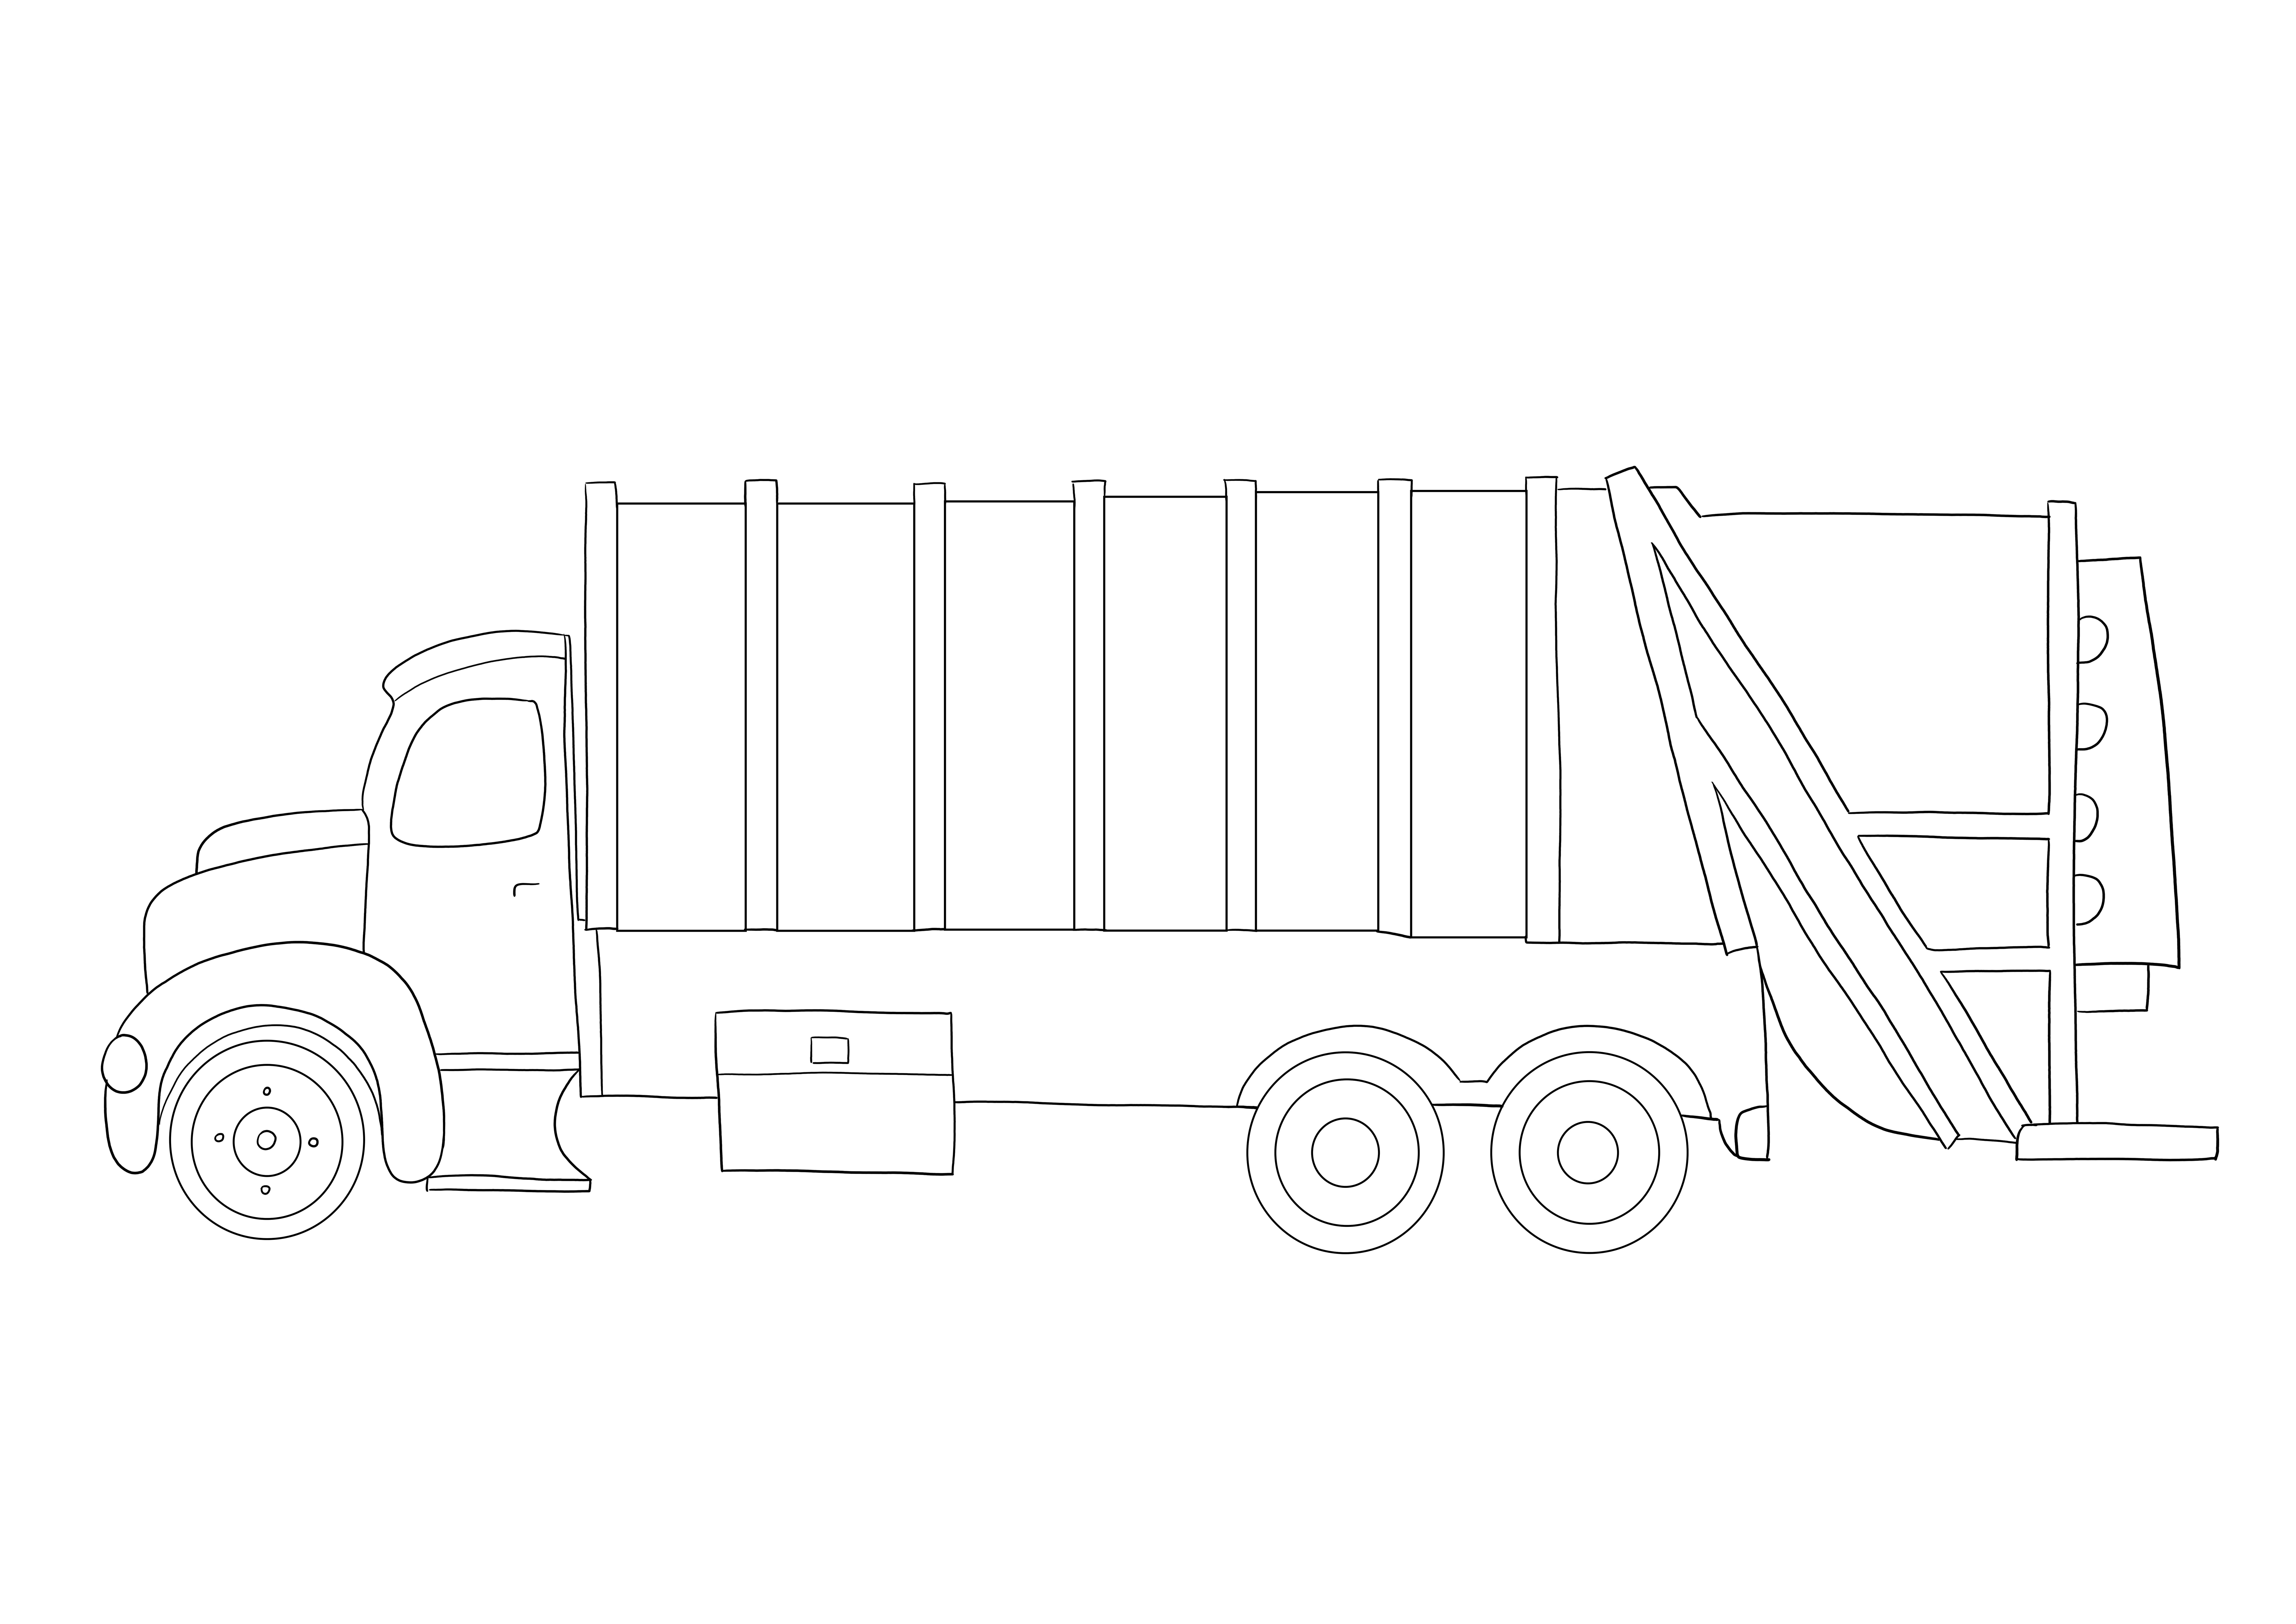 Imagen para colorear gratis de un enorme camion de basura para descargar o imprimir